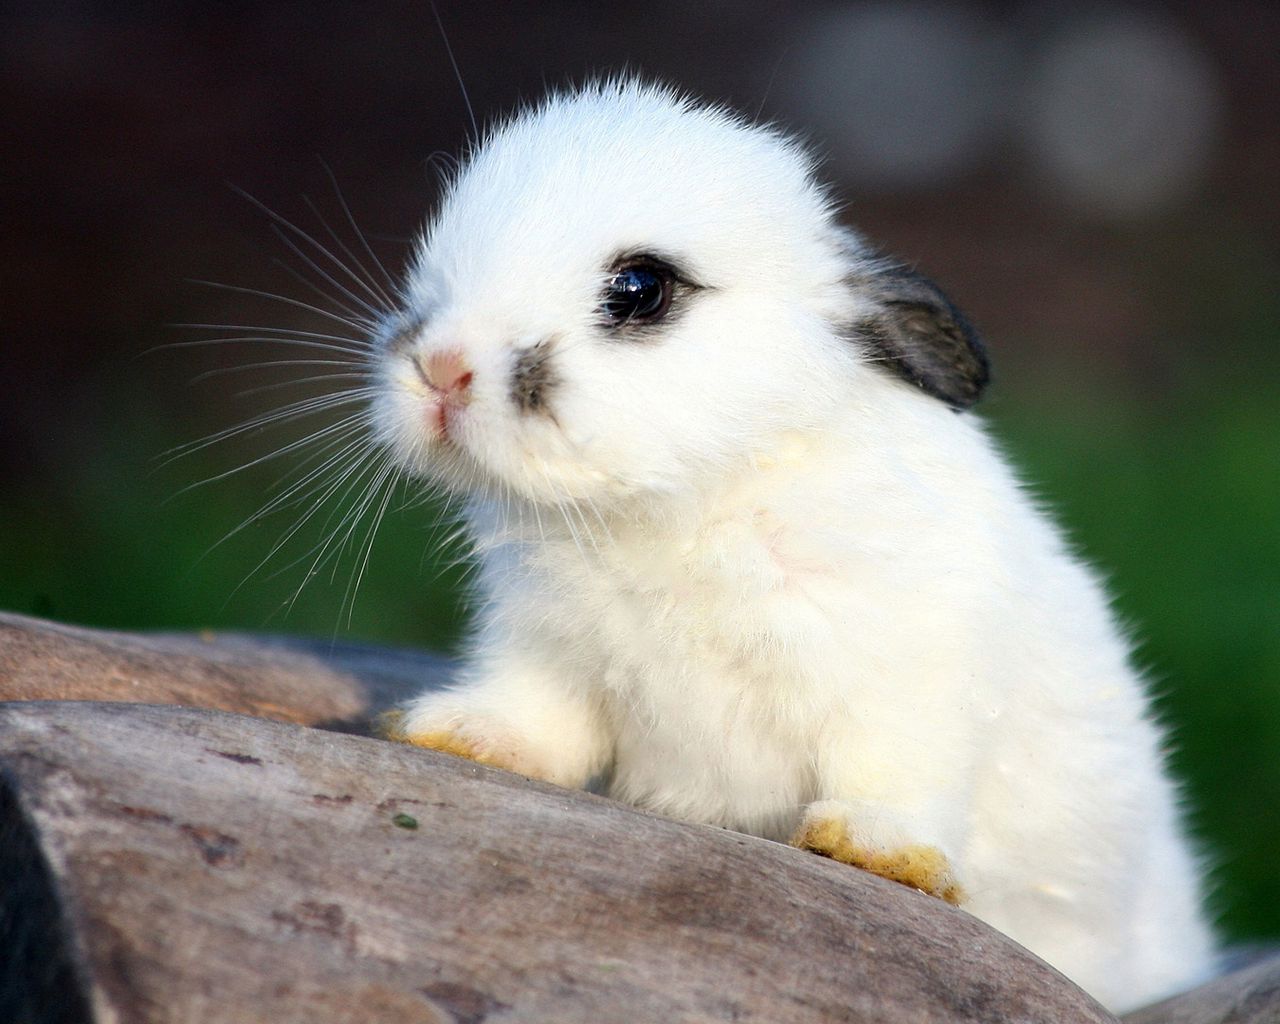 Rabbit: Nếu bạn yêu động vật, không thể bỏ qua bức ảnh này về con thỏ xinh xắn. Nhìn vào đôi tai dài và mũi nhọn của chúng, bạn sẽ có cảm giác bình yên và thư thái ngay lập tức. Đây là hình ảnh lý tưởng để xem sau một ngày dài căng thẳng. (Translation: \